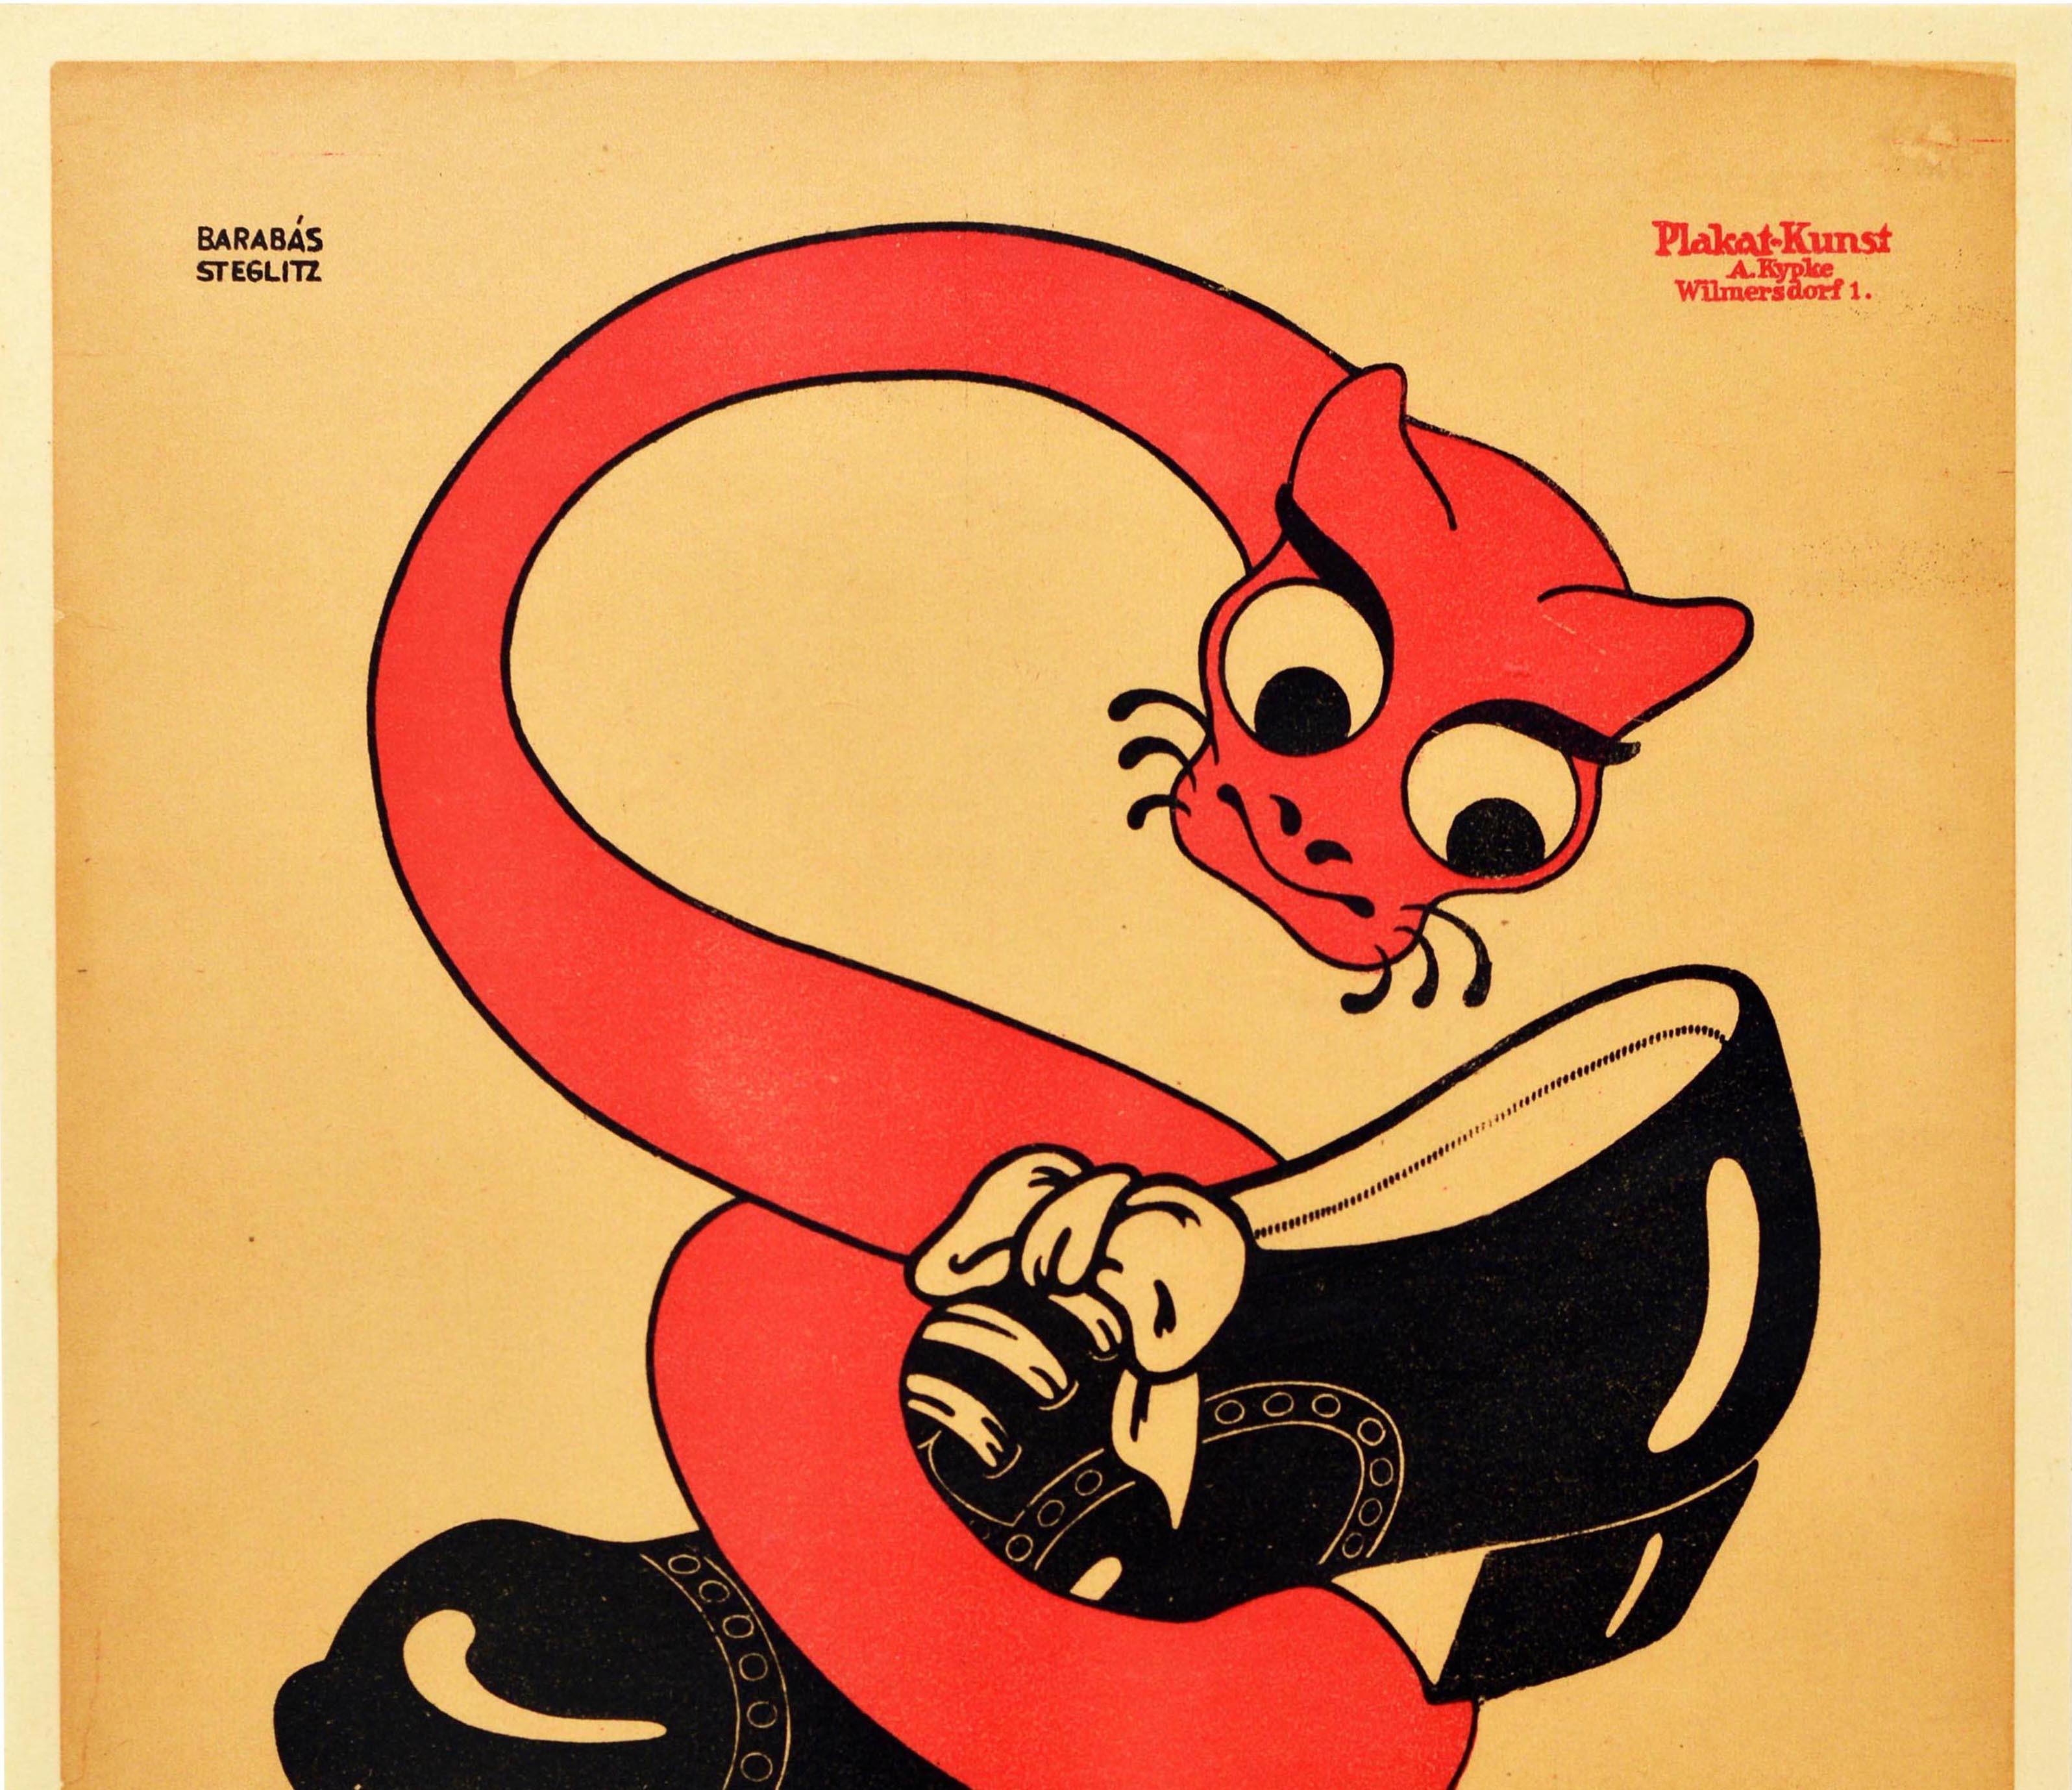 Original Antikes Poster Berlowitz Munzstrasse 24 Berlin Deutschland Schlangenschlangen – Print von Barabas Steglitz